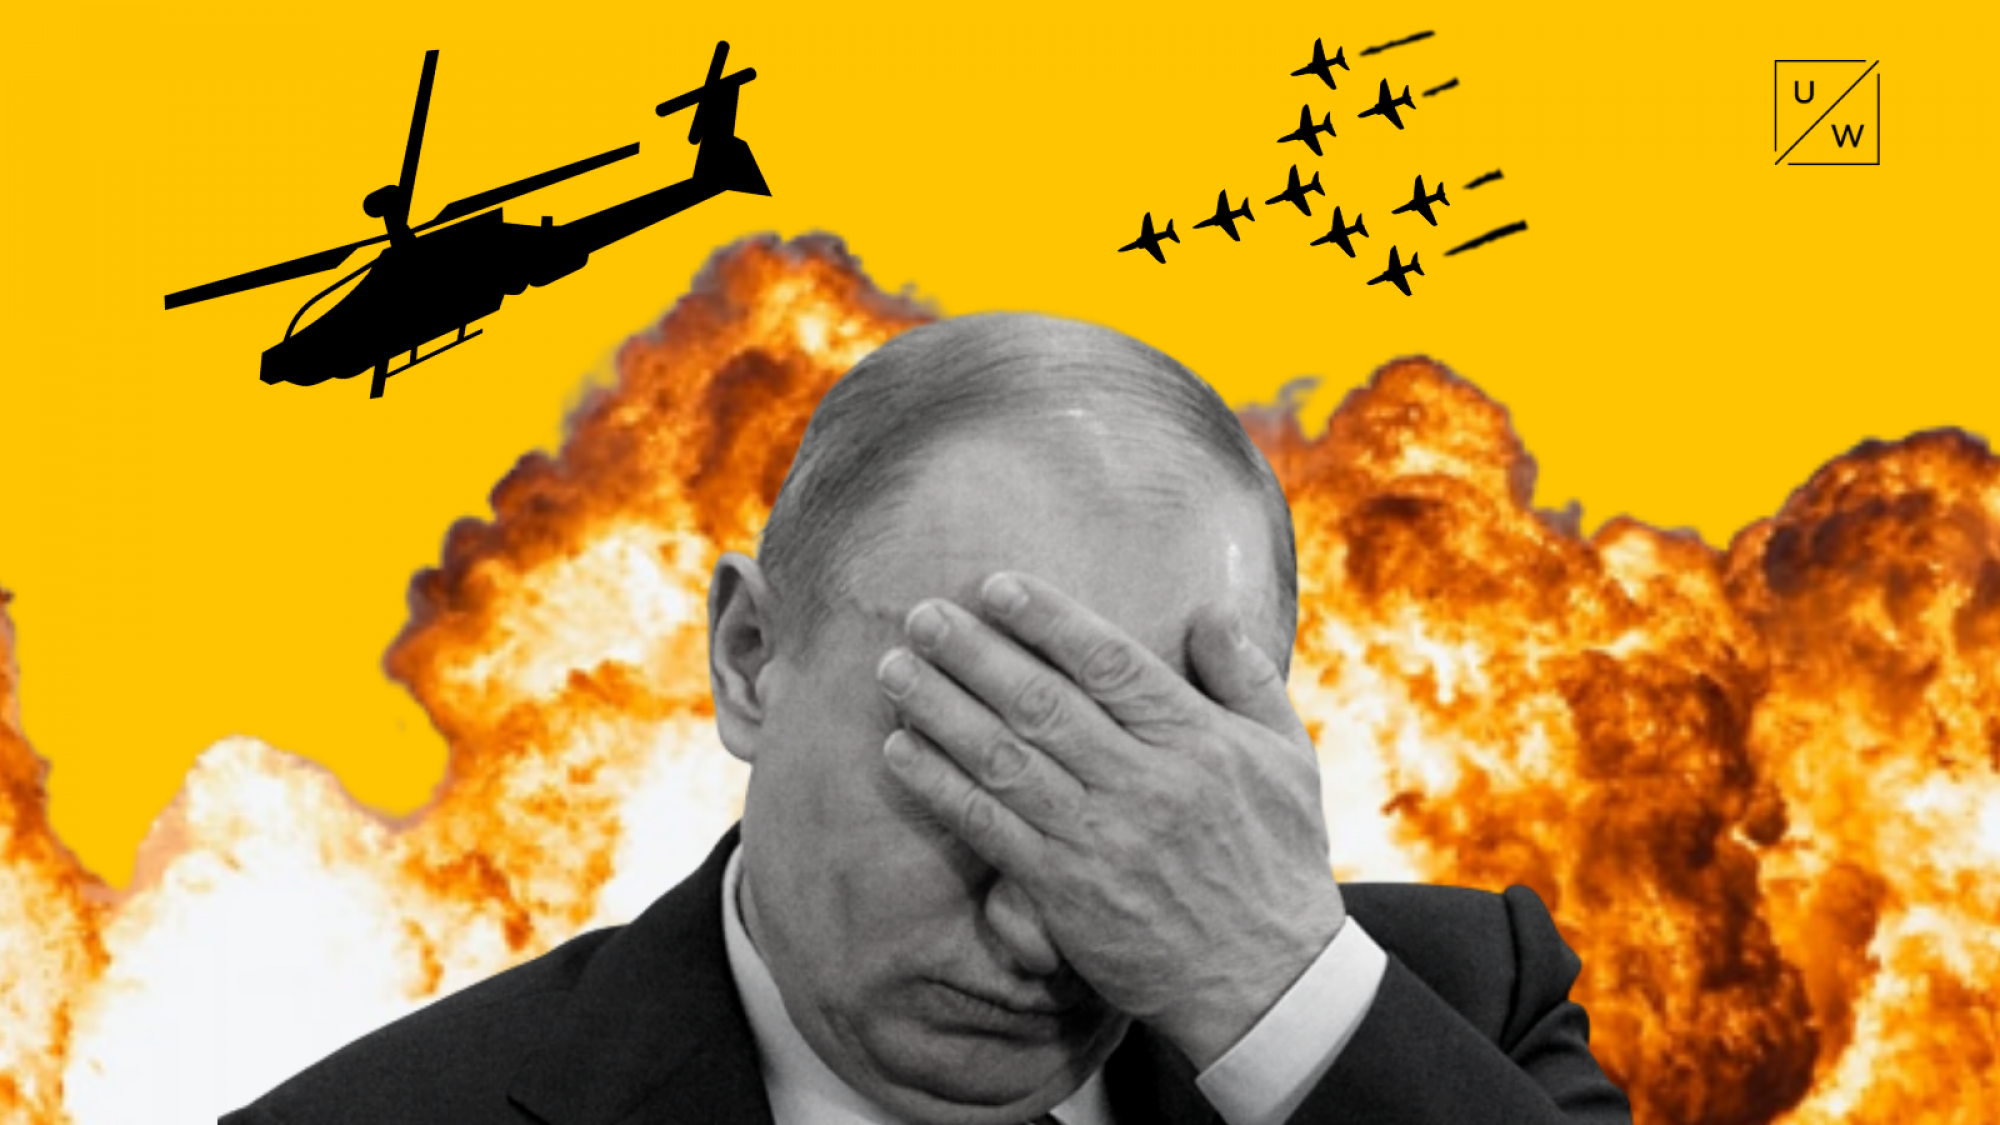 Sai lầm chiến lược lớn nhất của ông Putin là tấn công Ukraina? - Ảnh 1.